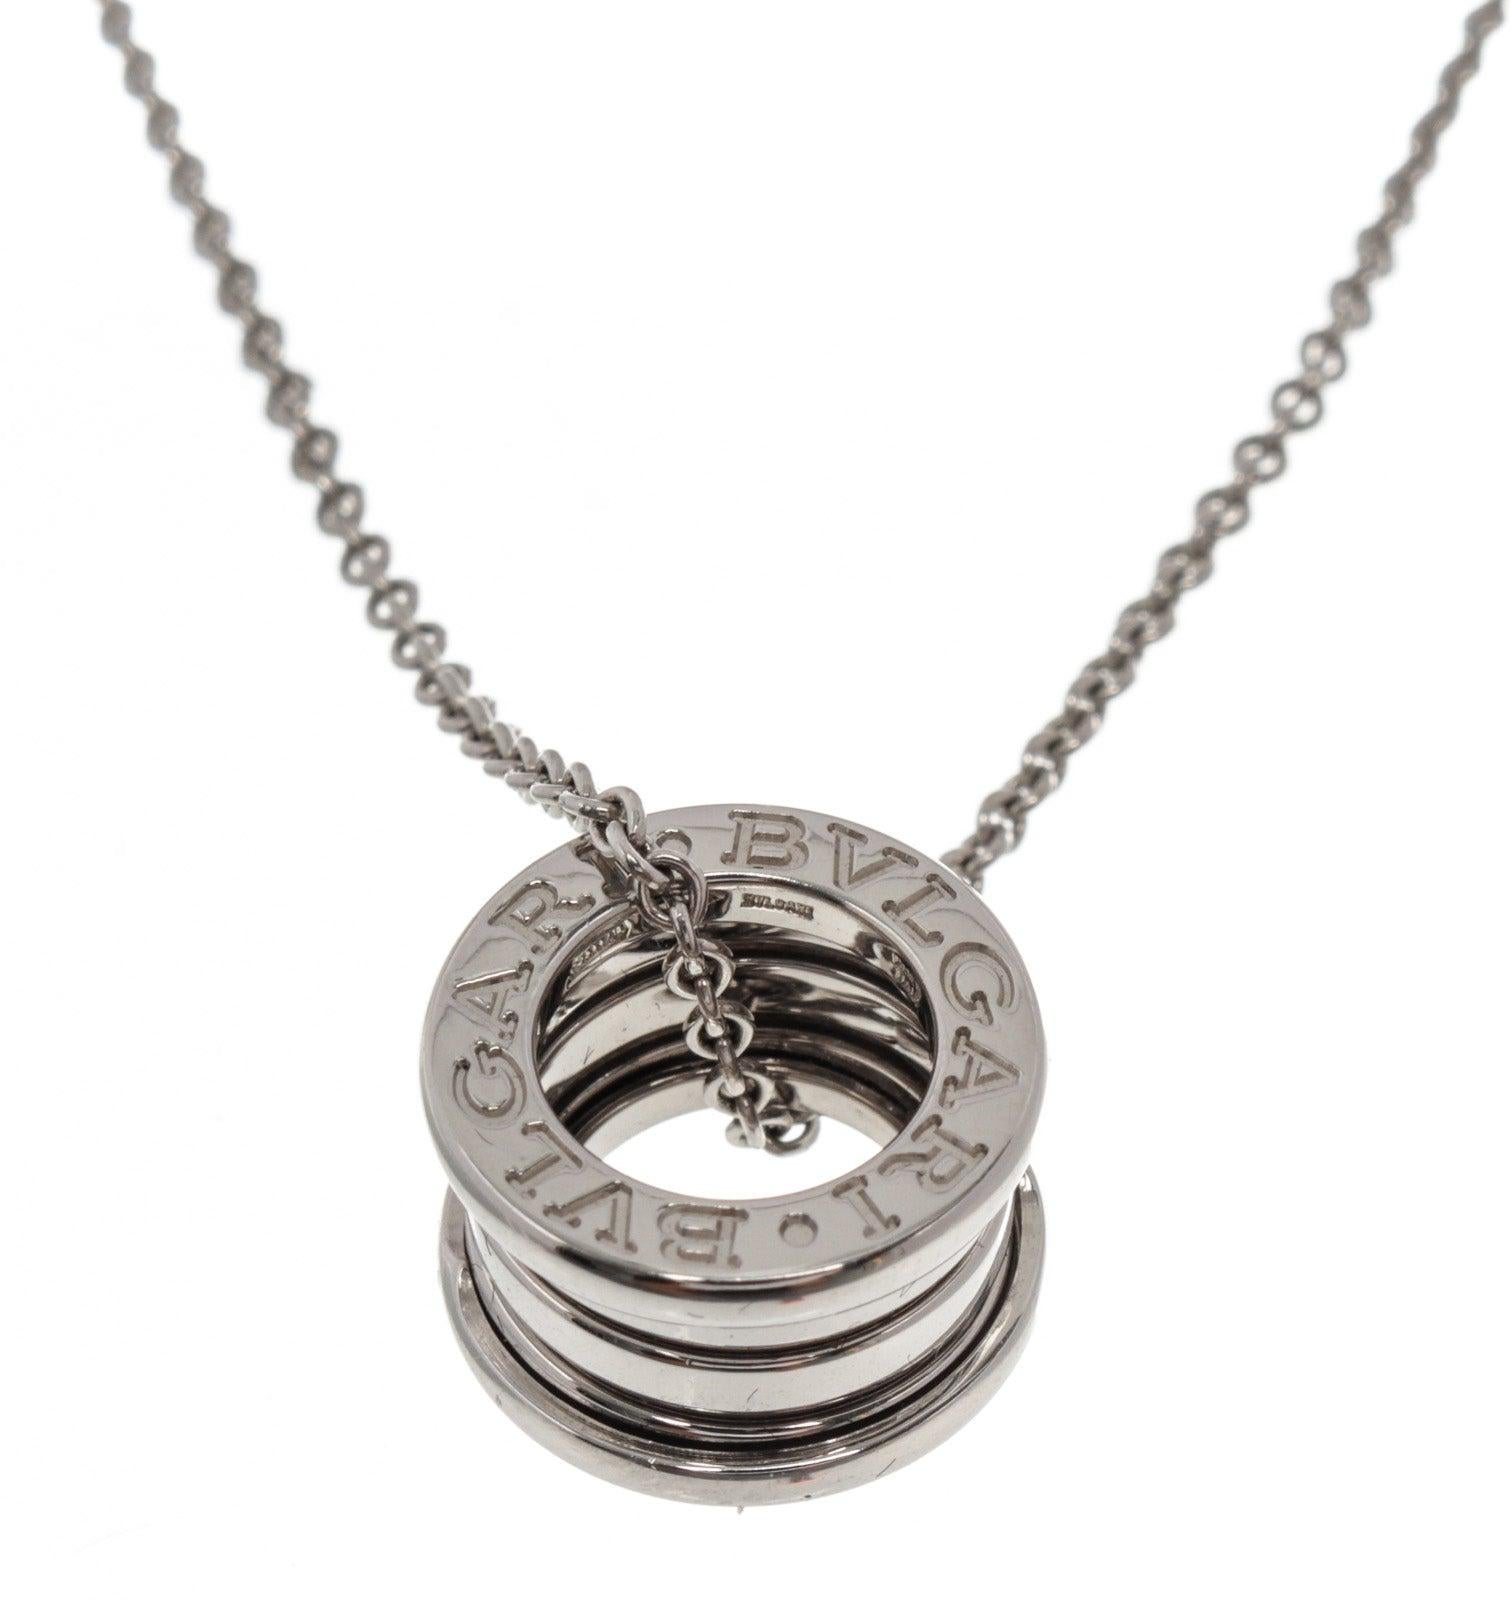 Bvlgari Silver B.Zero 1 Pendant Necklace with silver-tone hardware.

50054MSC